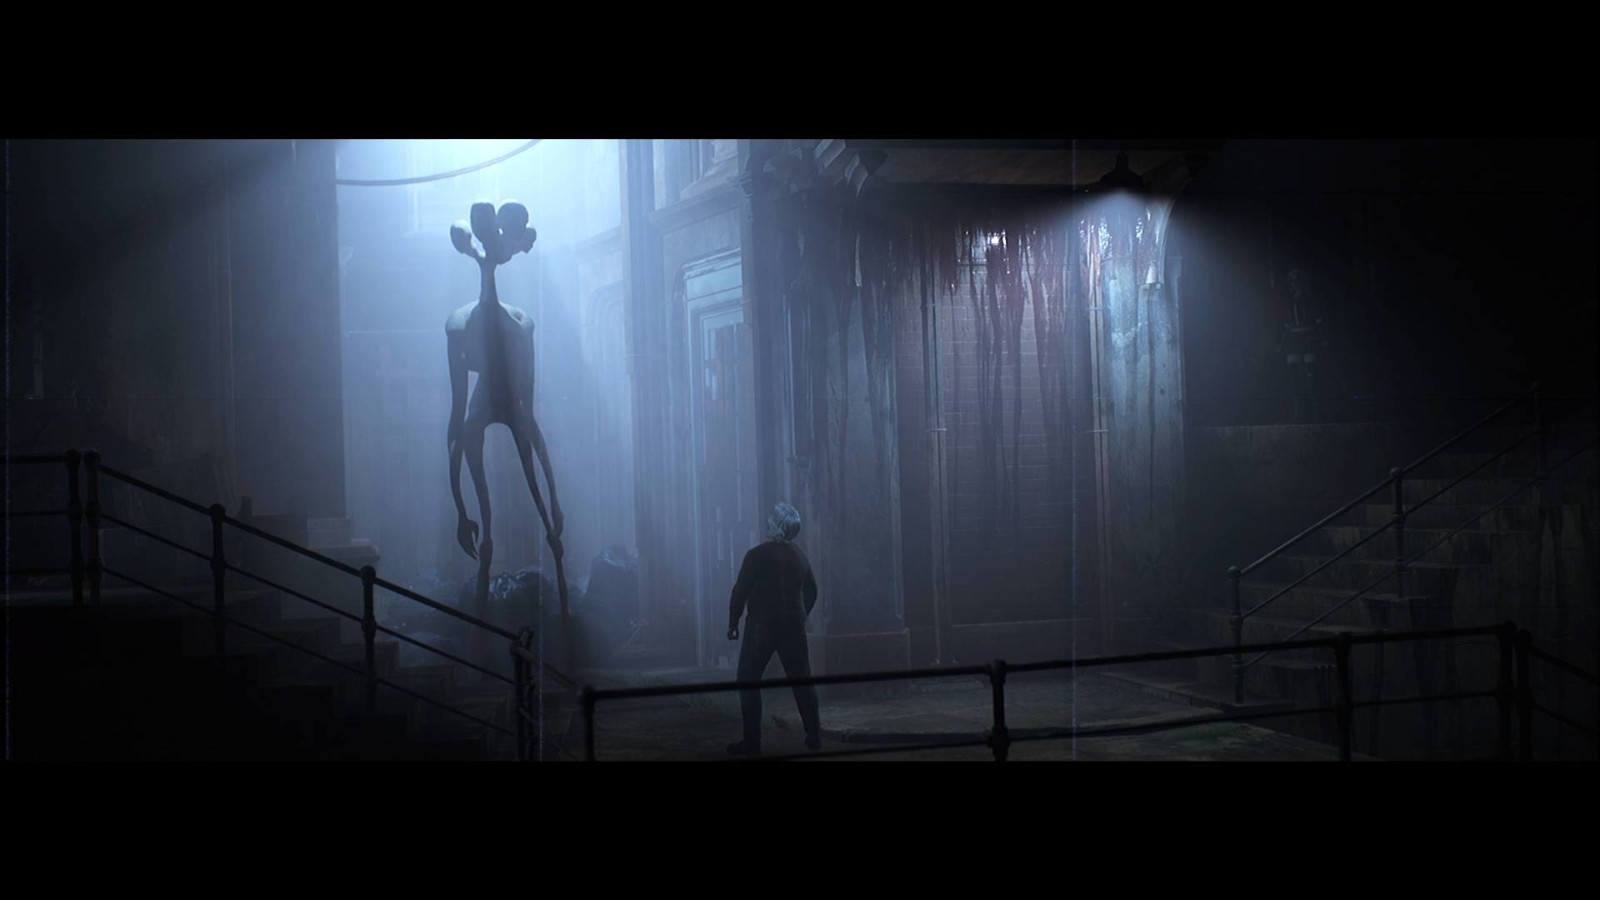 恐怖游戏《创伤后》演示 灵感来源于《生化》《寂静岭》